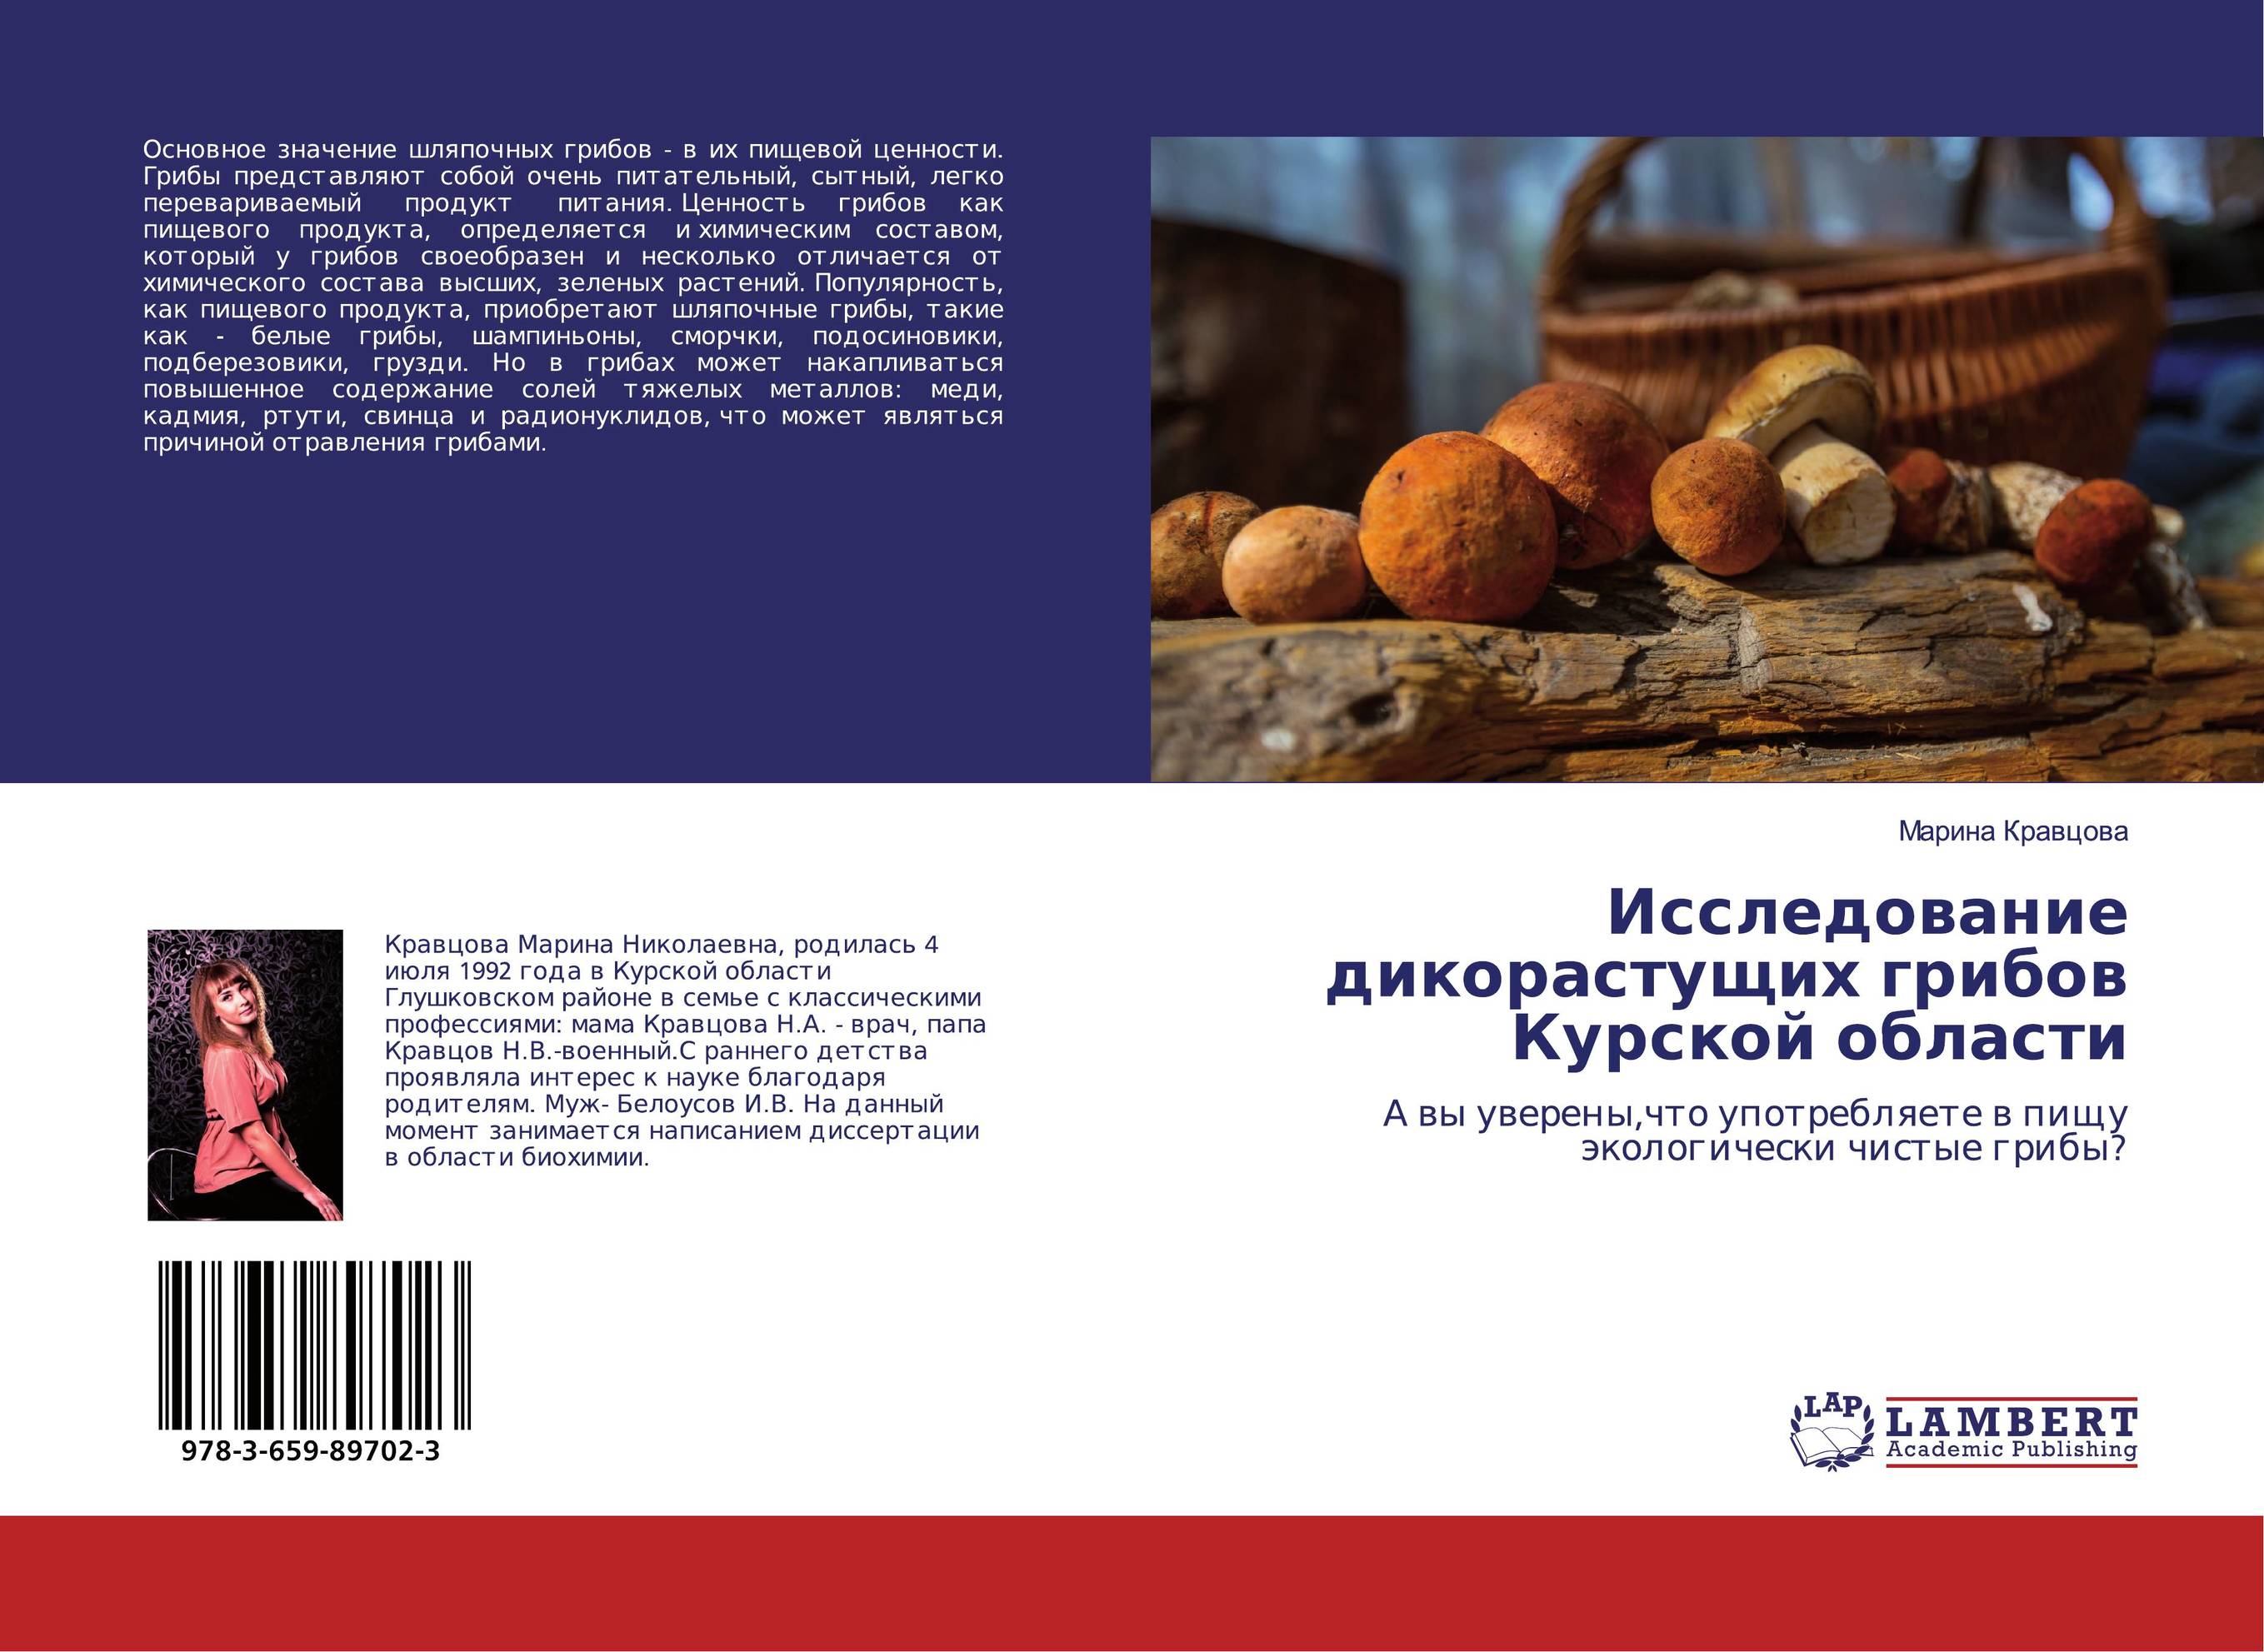 Исследование дикорастущих грибов Курской области. А вы уверены,что употребляете в пищу экологически чистые грибы?.